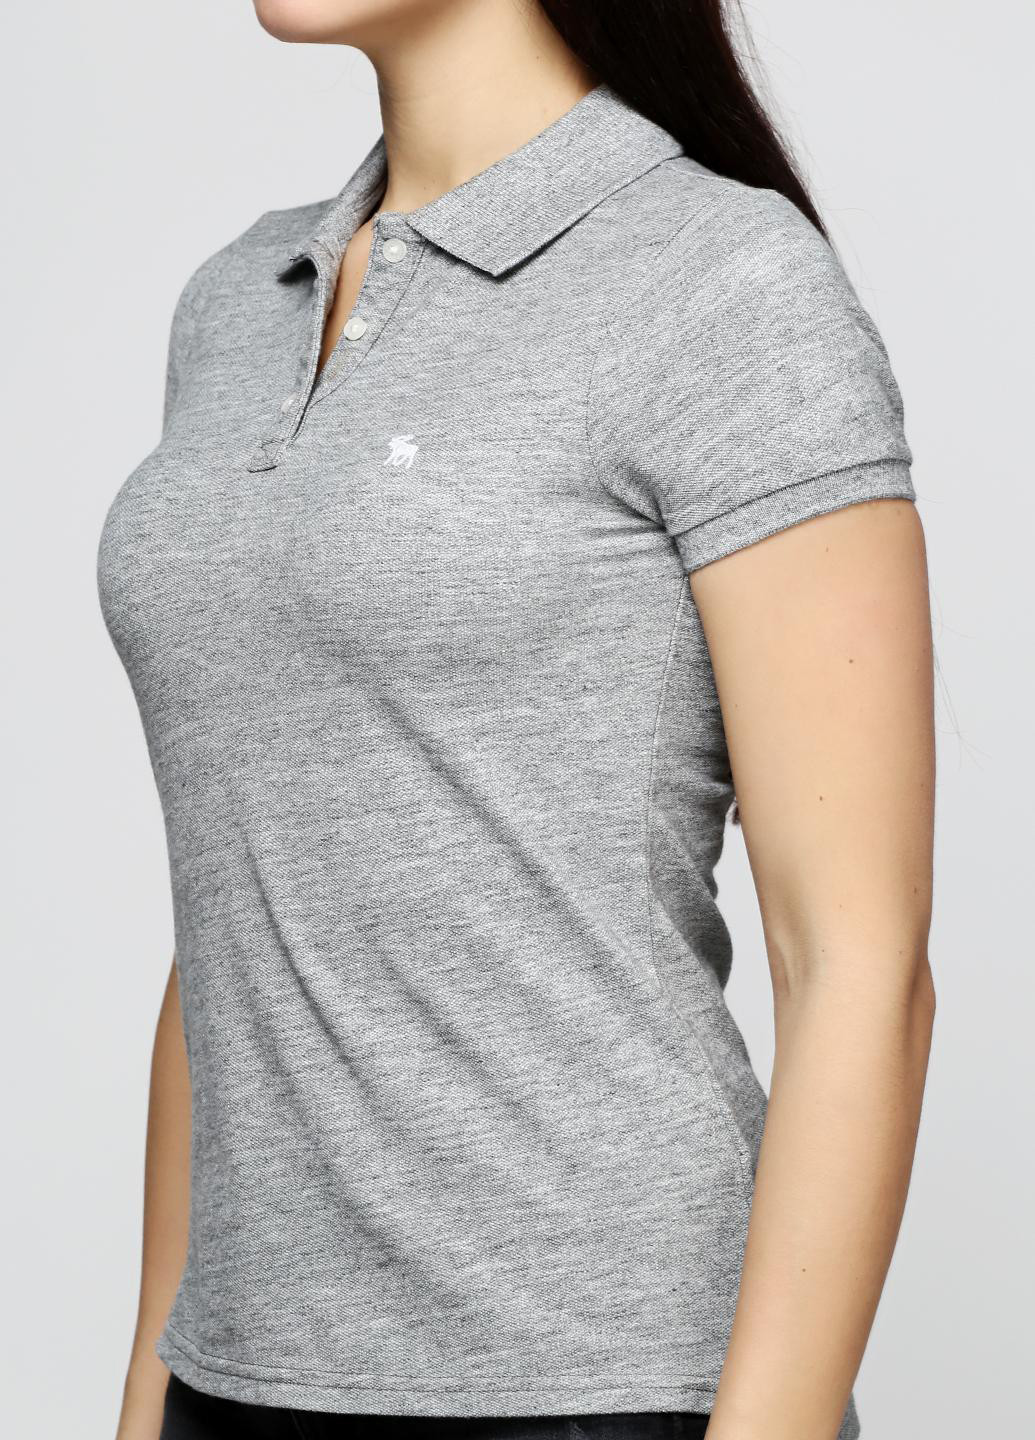 Серая женская футболка-поло Abercrombie & Fitch с логотипом